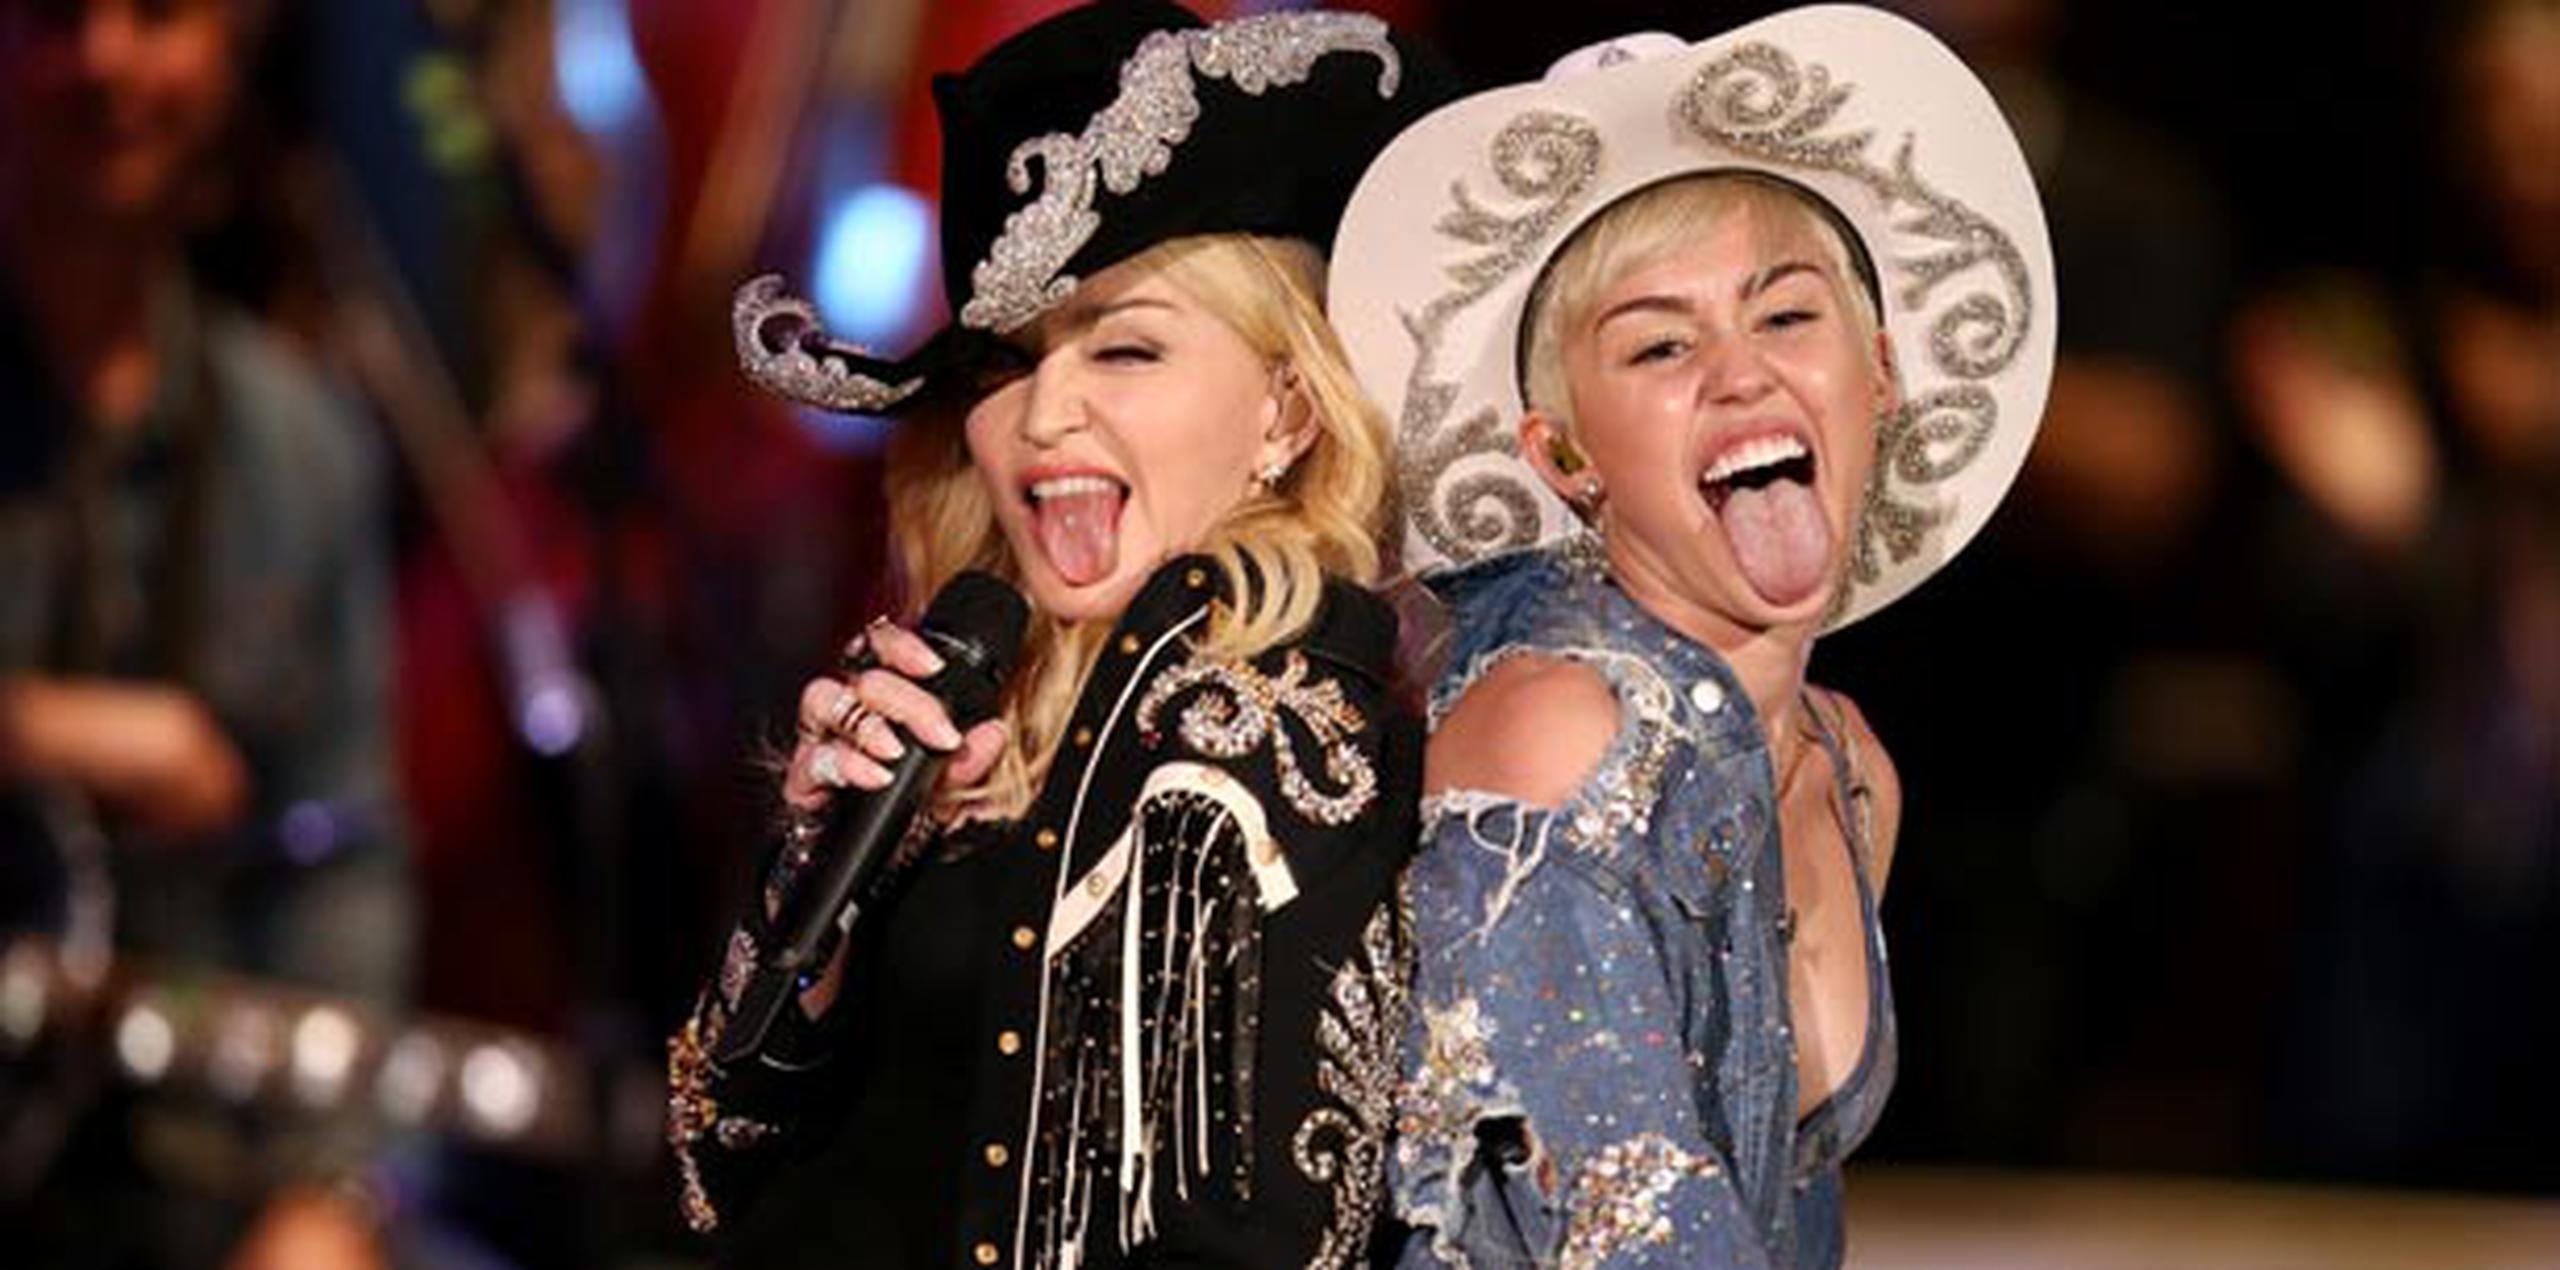 Miley Cyrus "MTV Unplugged" se transmitirá esta noche, a las 10:00 p.m. (hora de Puerto Rico).